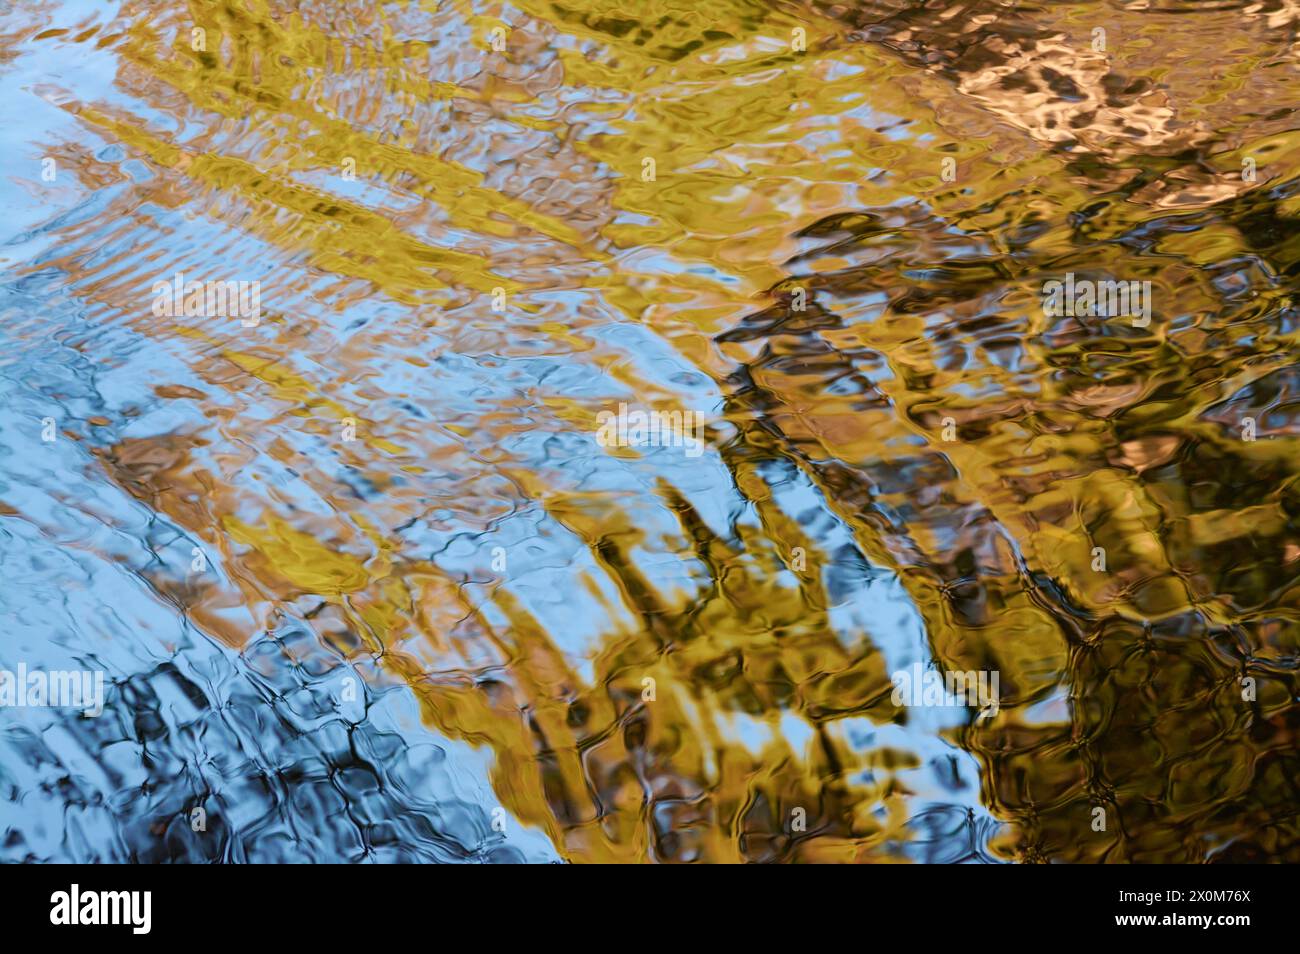 Reflexionen von Vegetation und Himmel, die abstrakte Muster in Blau-, Grün- und Brauntönen am Dove River, Cradle Mountain, Tasmanien, Australien, bilden. Stockfoto